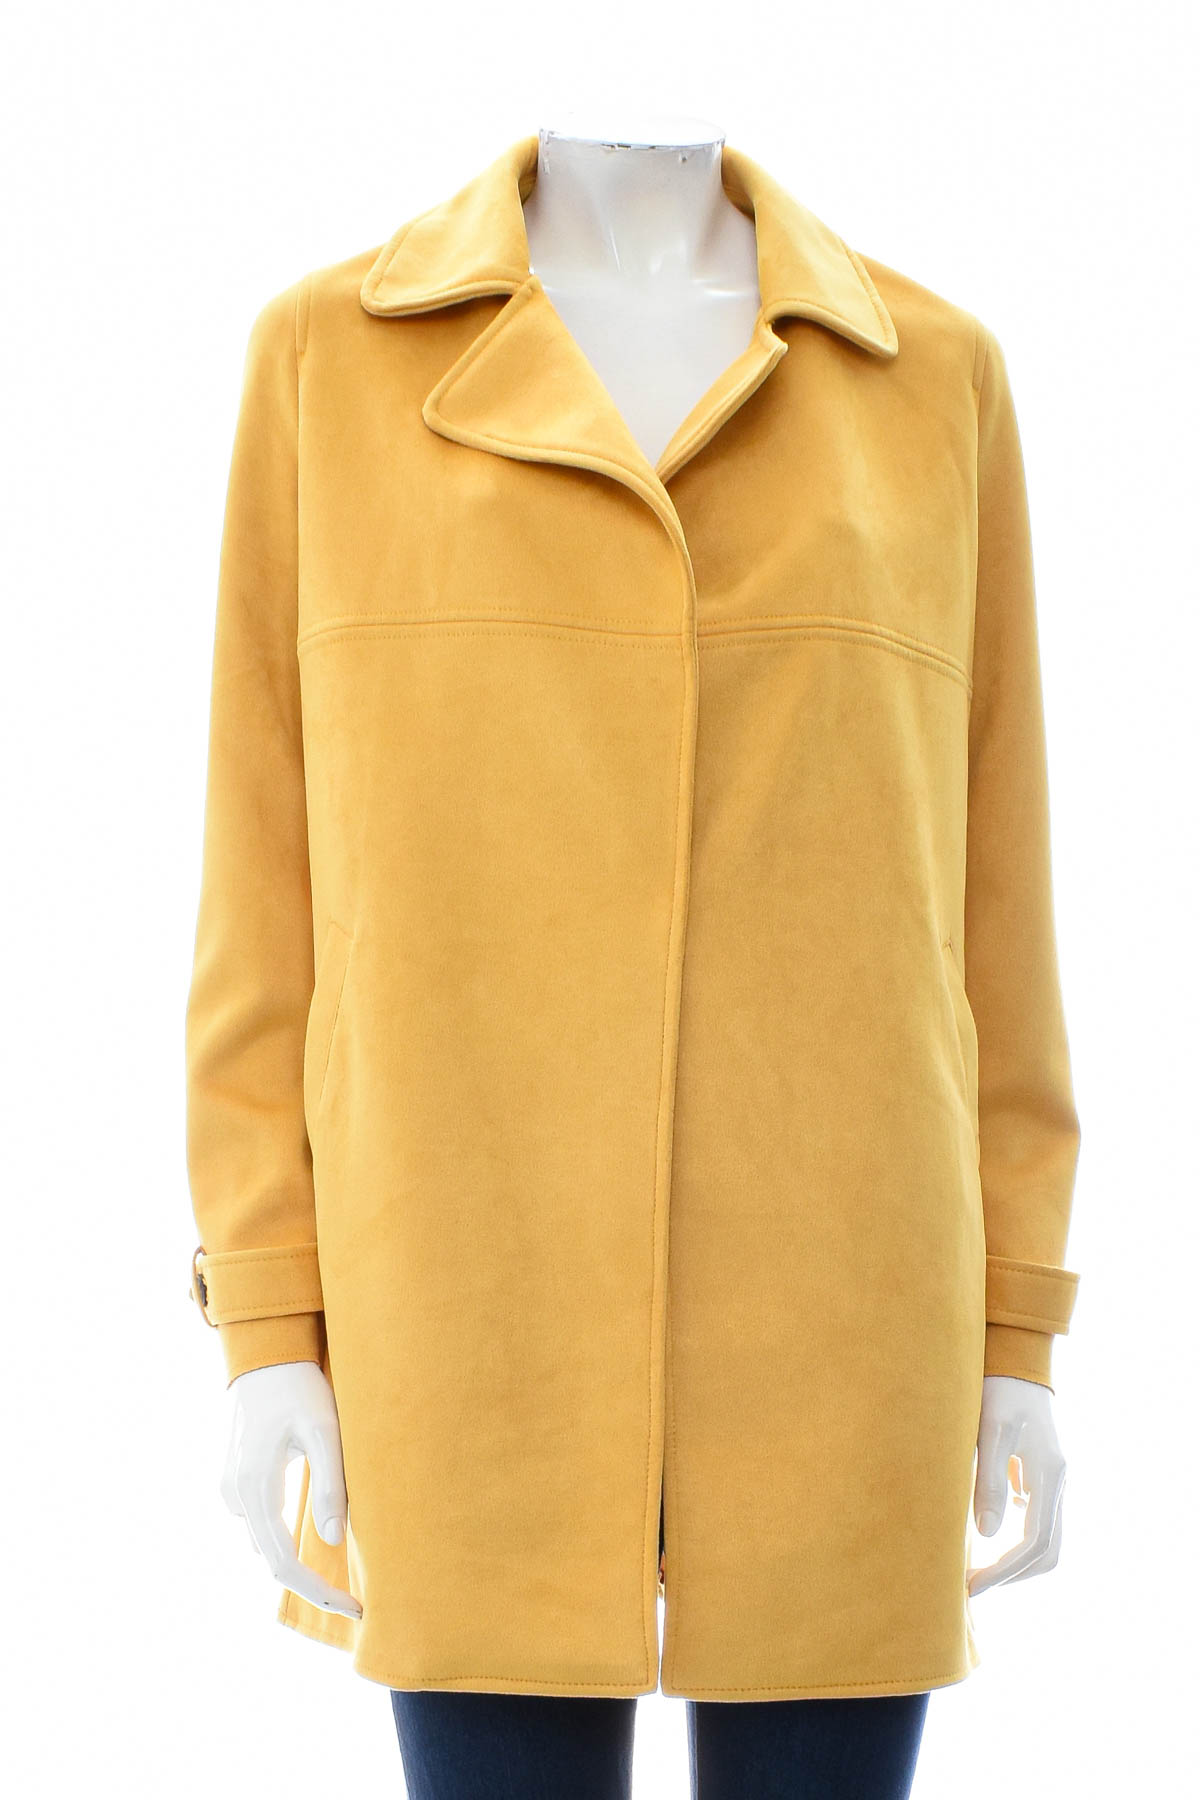 Women's coat - Orsay - 0